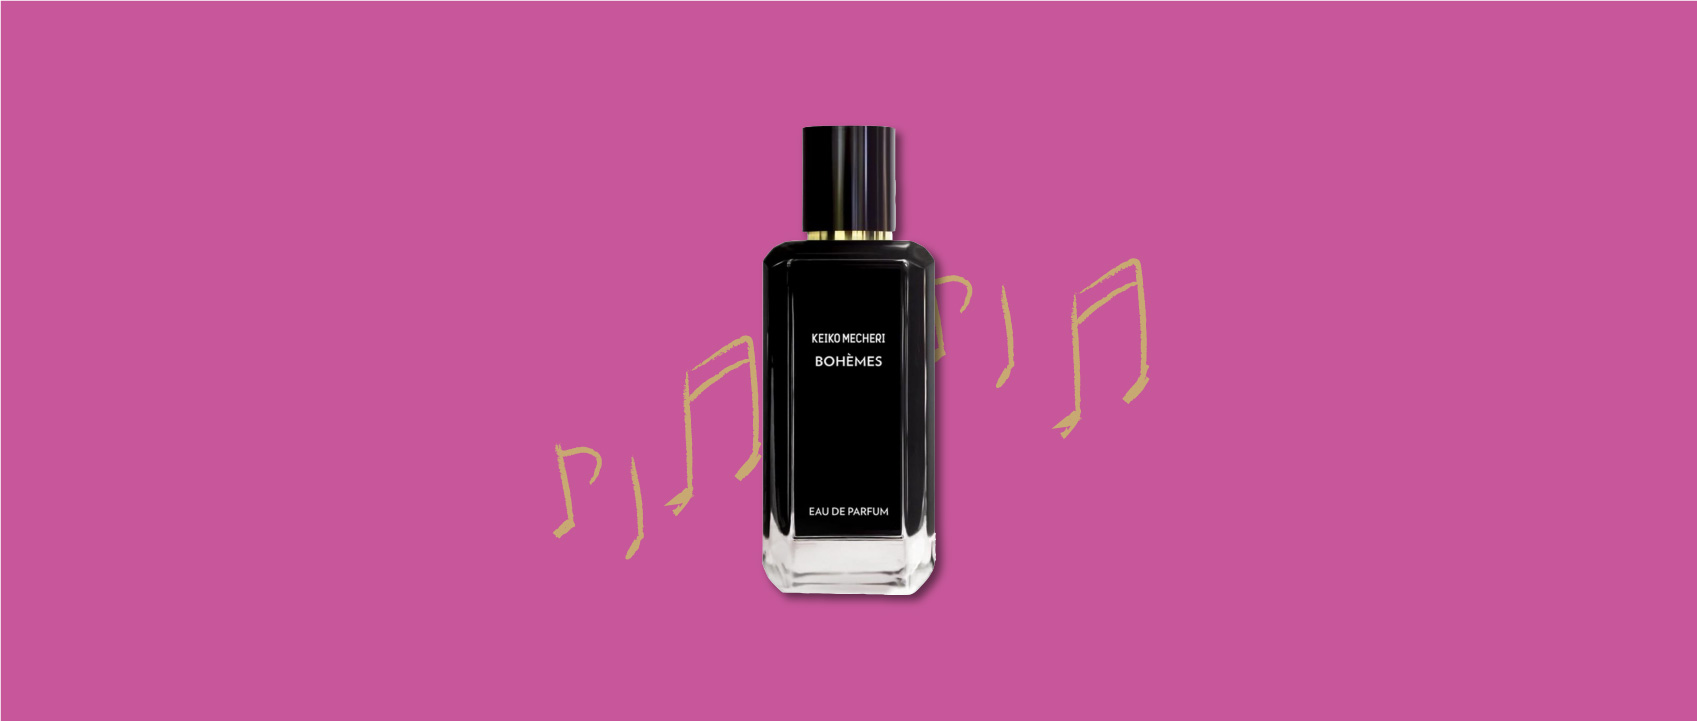 bottle of bohémes perfume by keiko mecheri